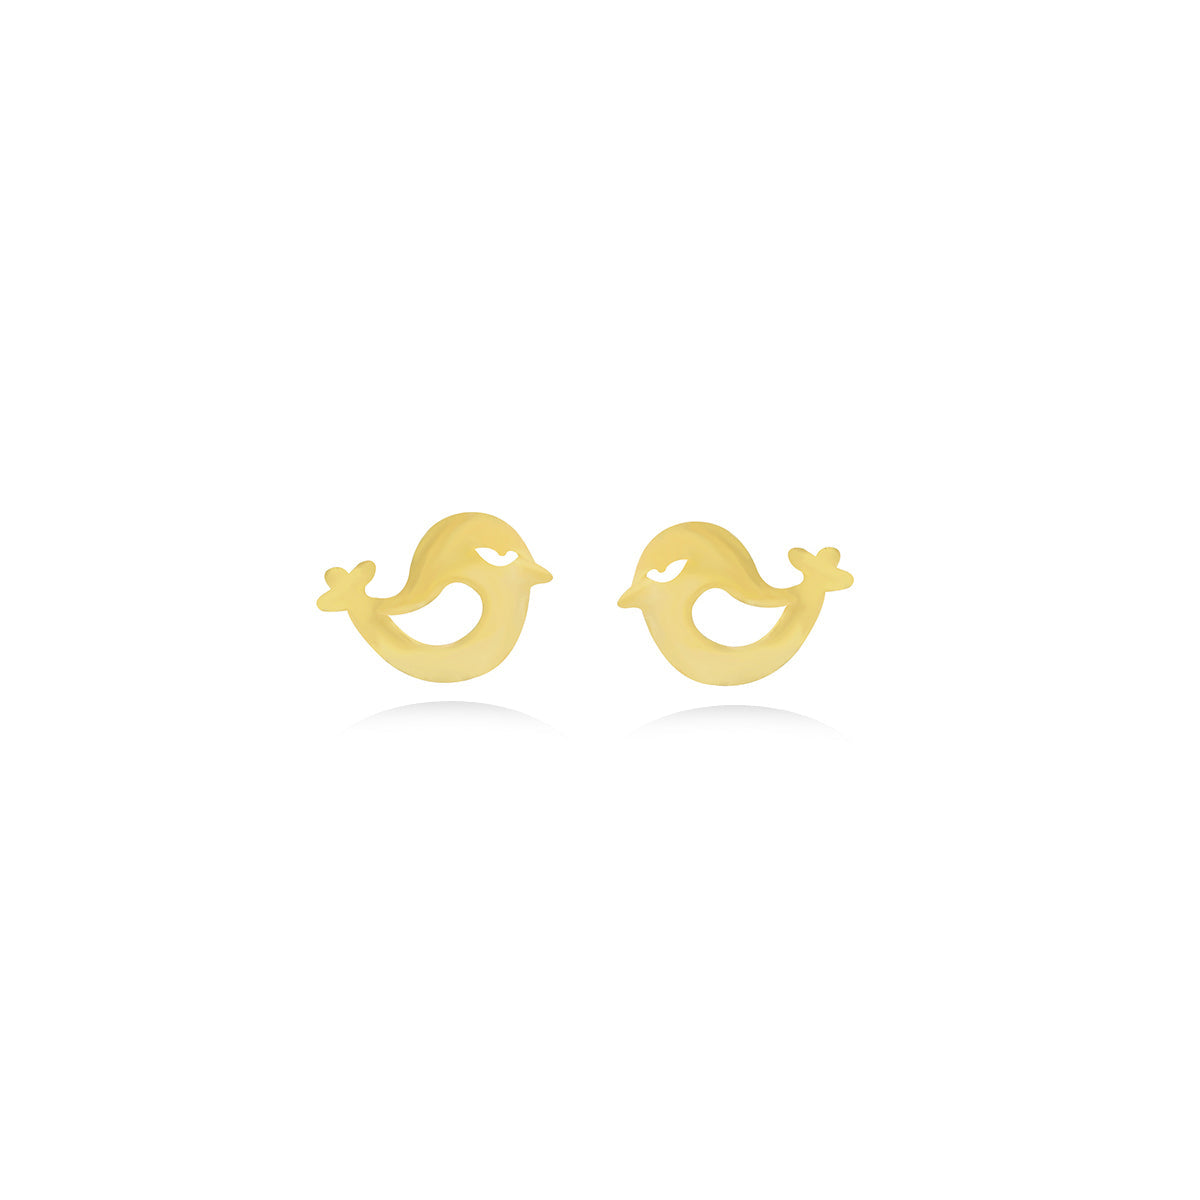 Bird Earrings in 18k Yellow Gold